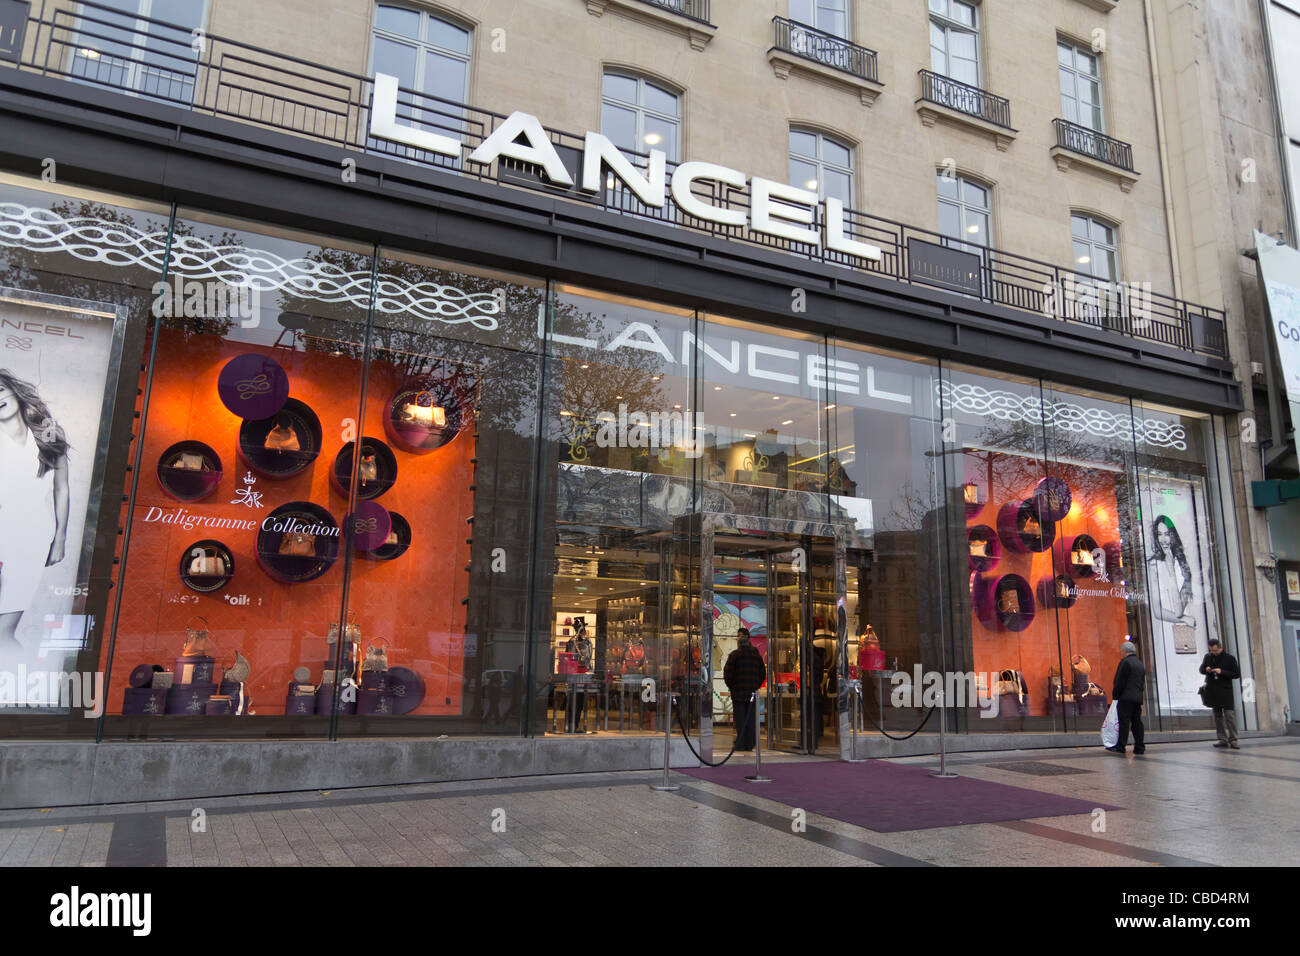 Lancel store, Avenue des Champs-Élysées, Paris, Île-de-France, France Stock Photo